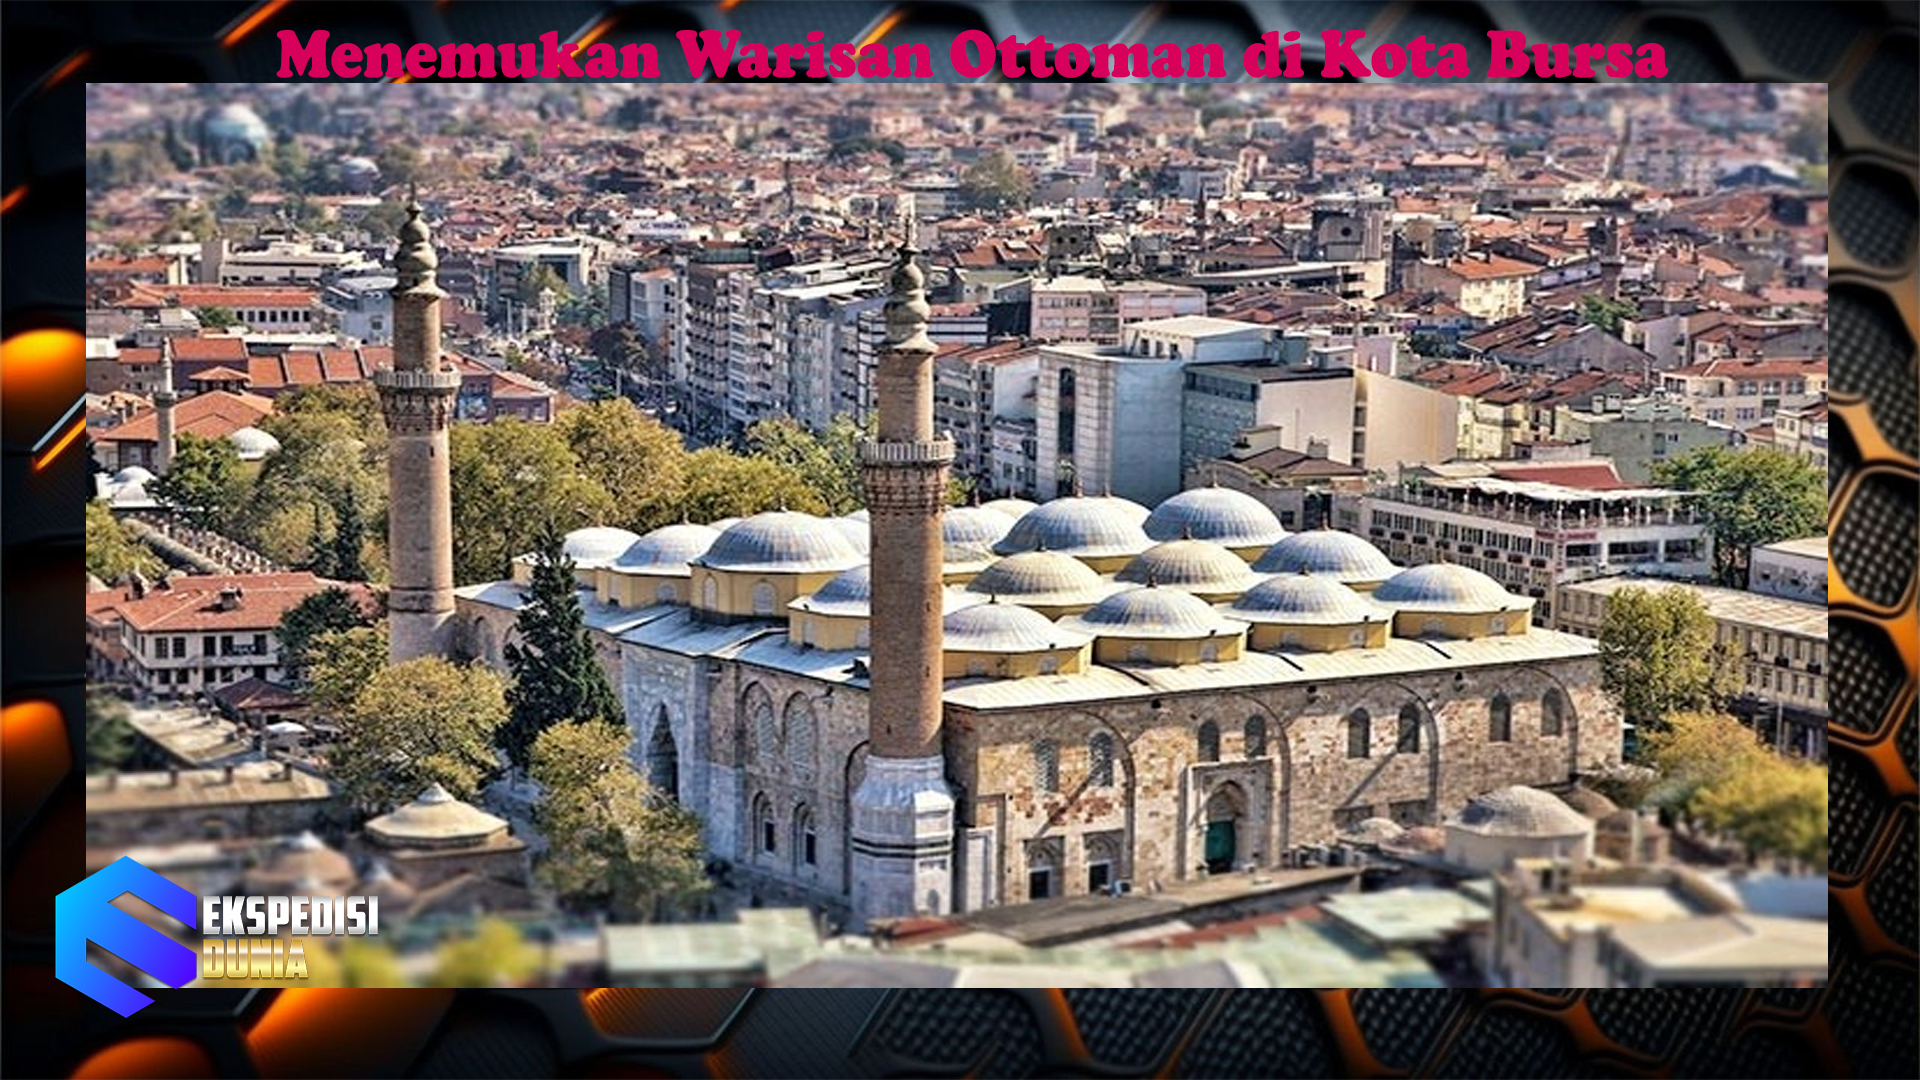 Menemukan Warisan Ottoman di Kota Bursa